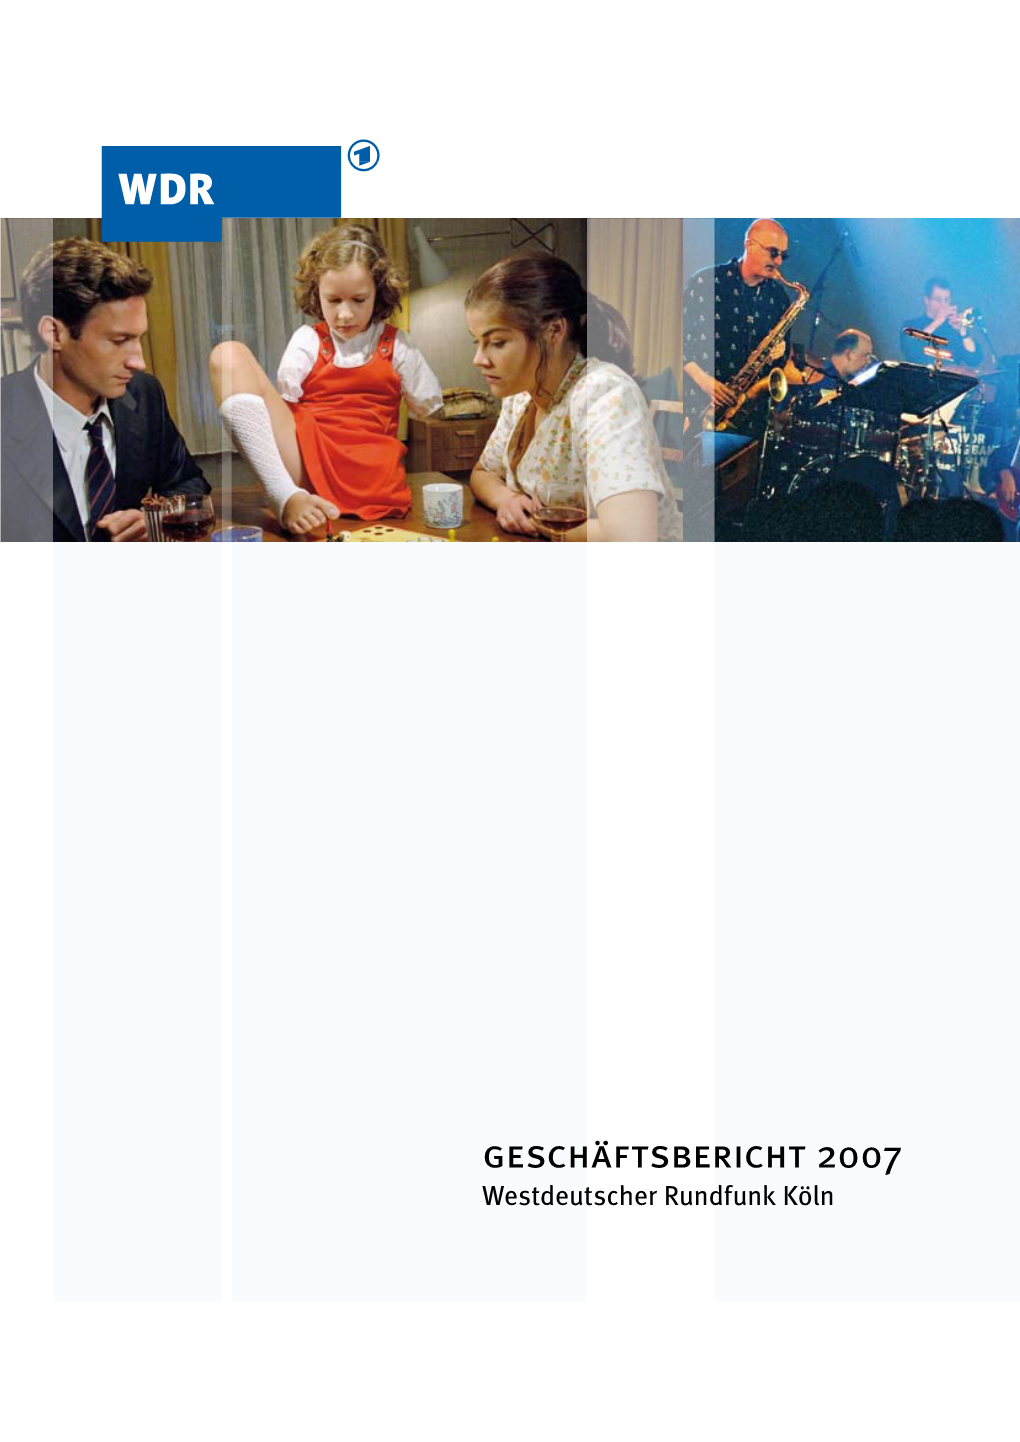 Geschäftsbericht 2007 Westdeutscher Rundfunk Köln